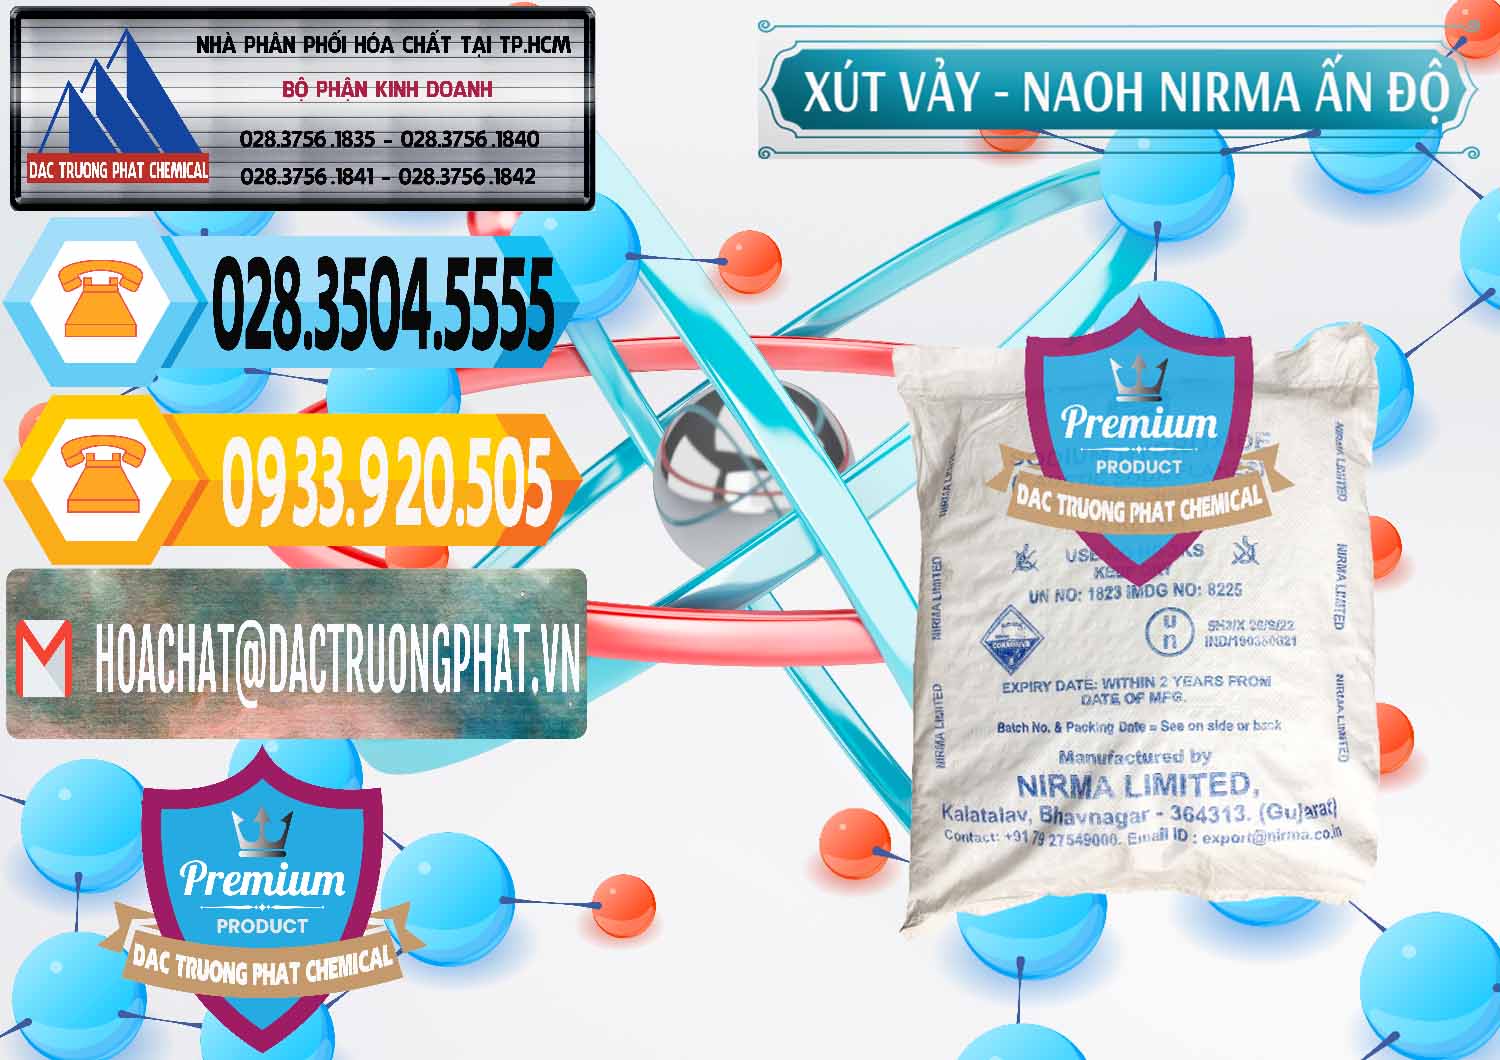 Công ty cung cấp & bán Xút Vảy - NaOH Vảy Nirma Ấn Độ India - 0371 - Chuyên phân phối - nhập khẩu hóa chất tại TP.HCM - hoachattayrua.net